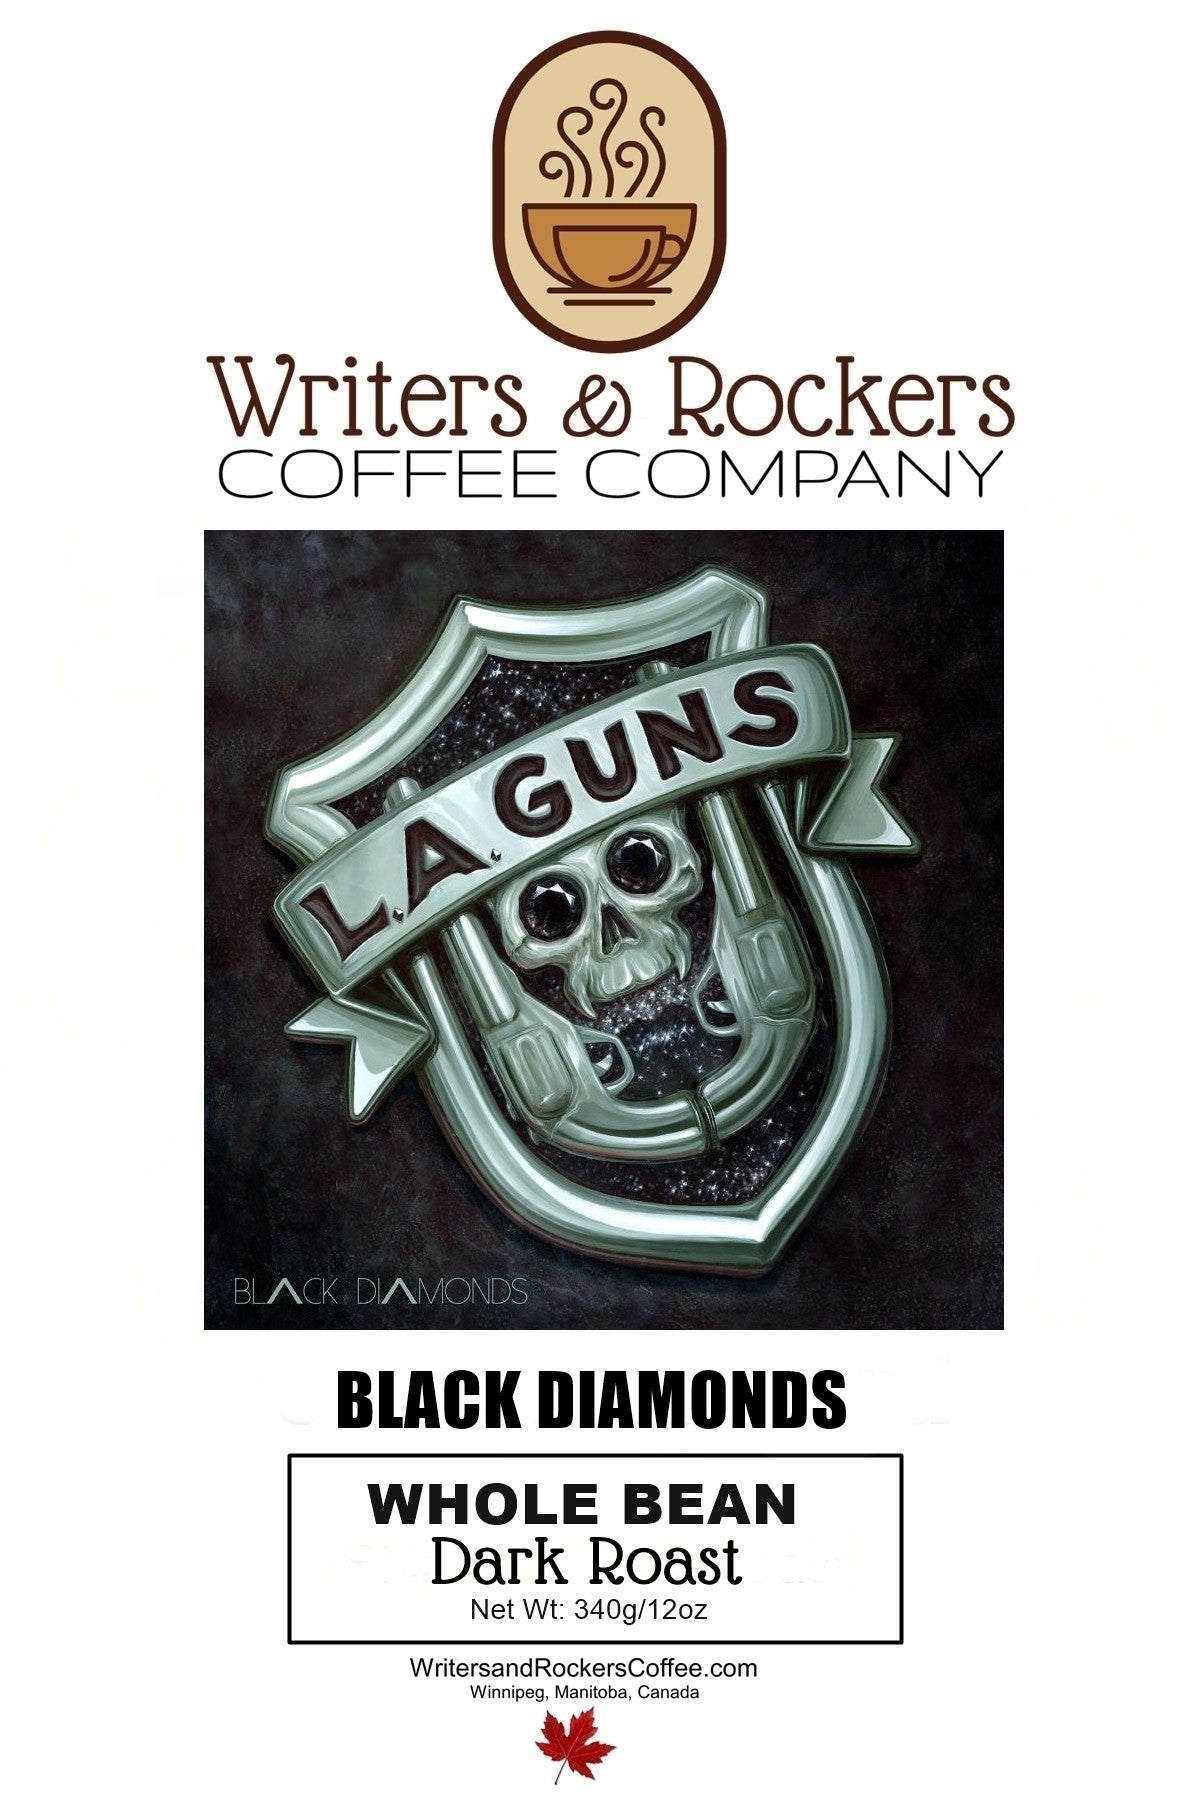 L.A. Guns' Black Diamonds